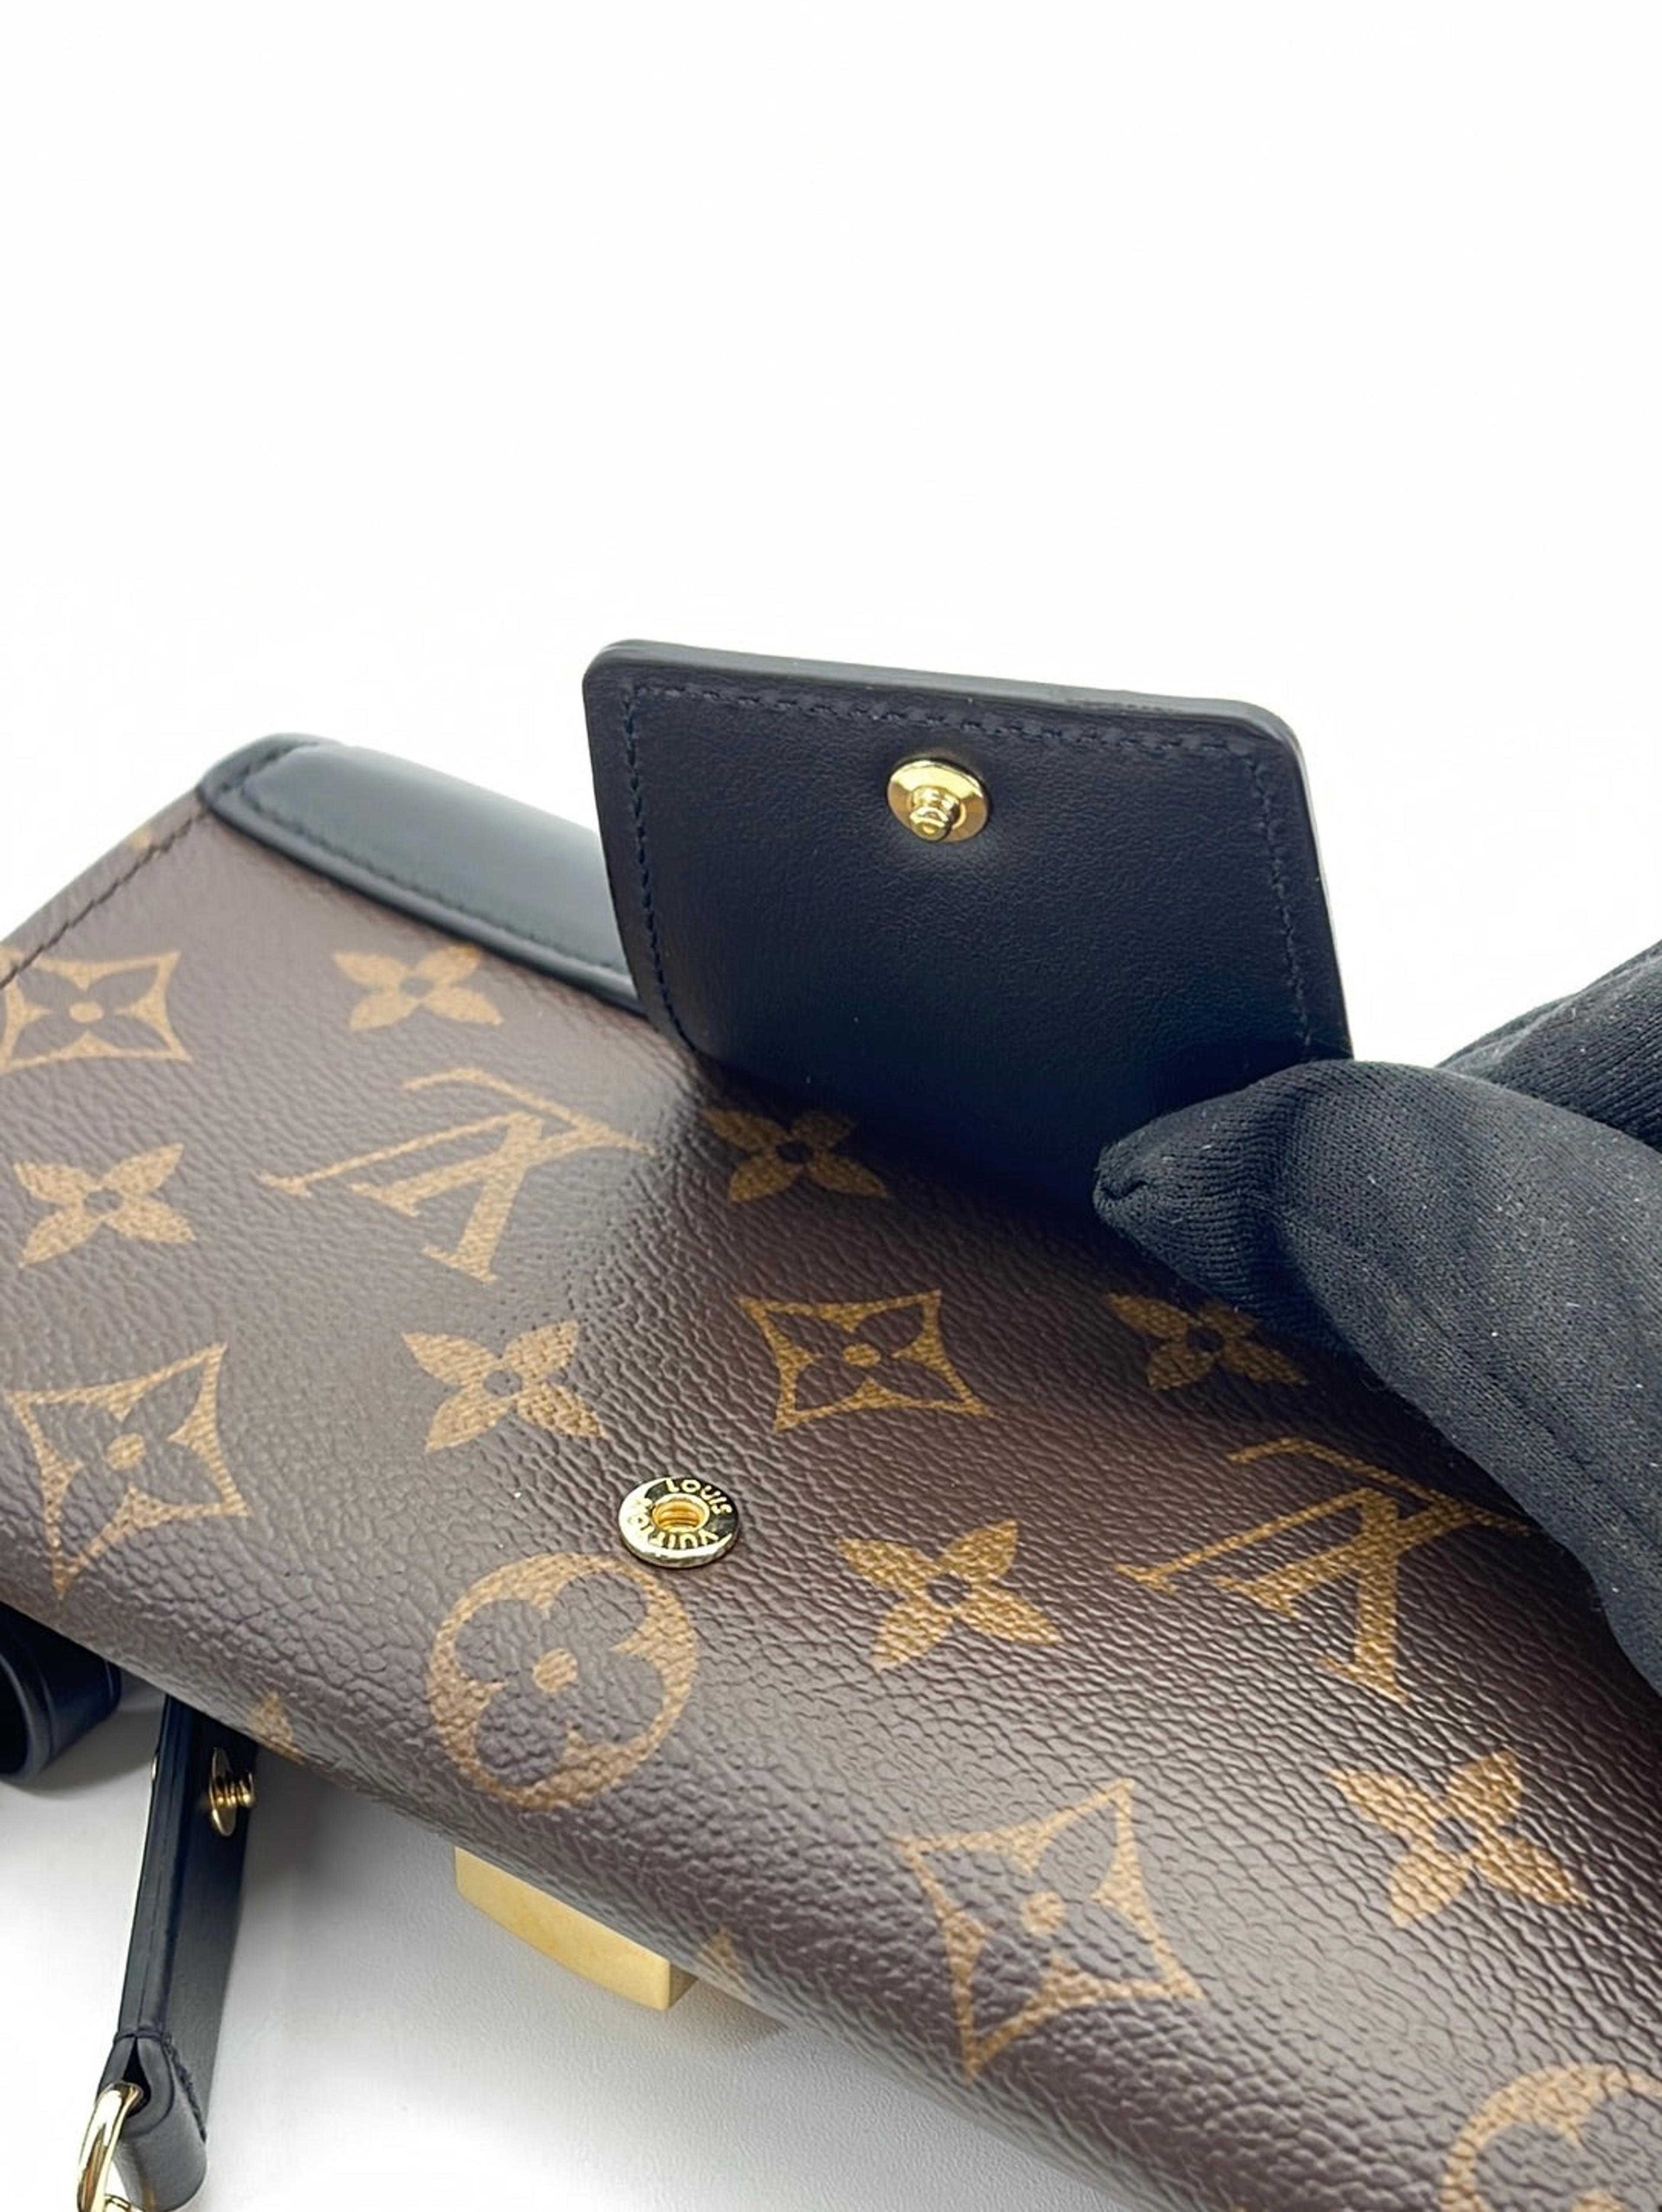 Preloved Louis Vuitton Padlock On Strap Bag 7DH48K6 100323